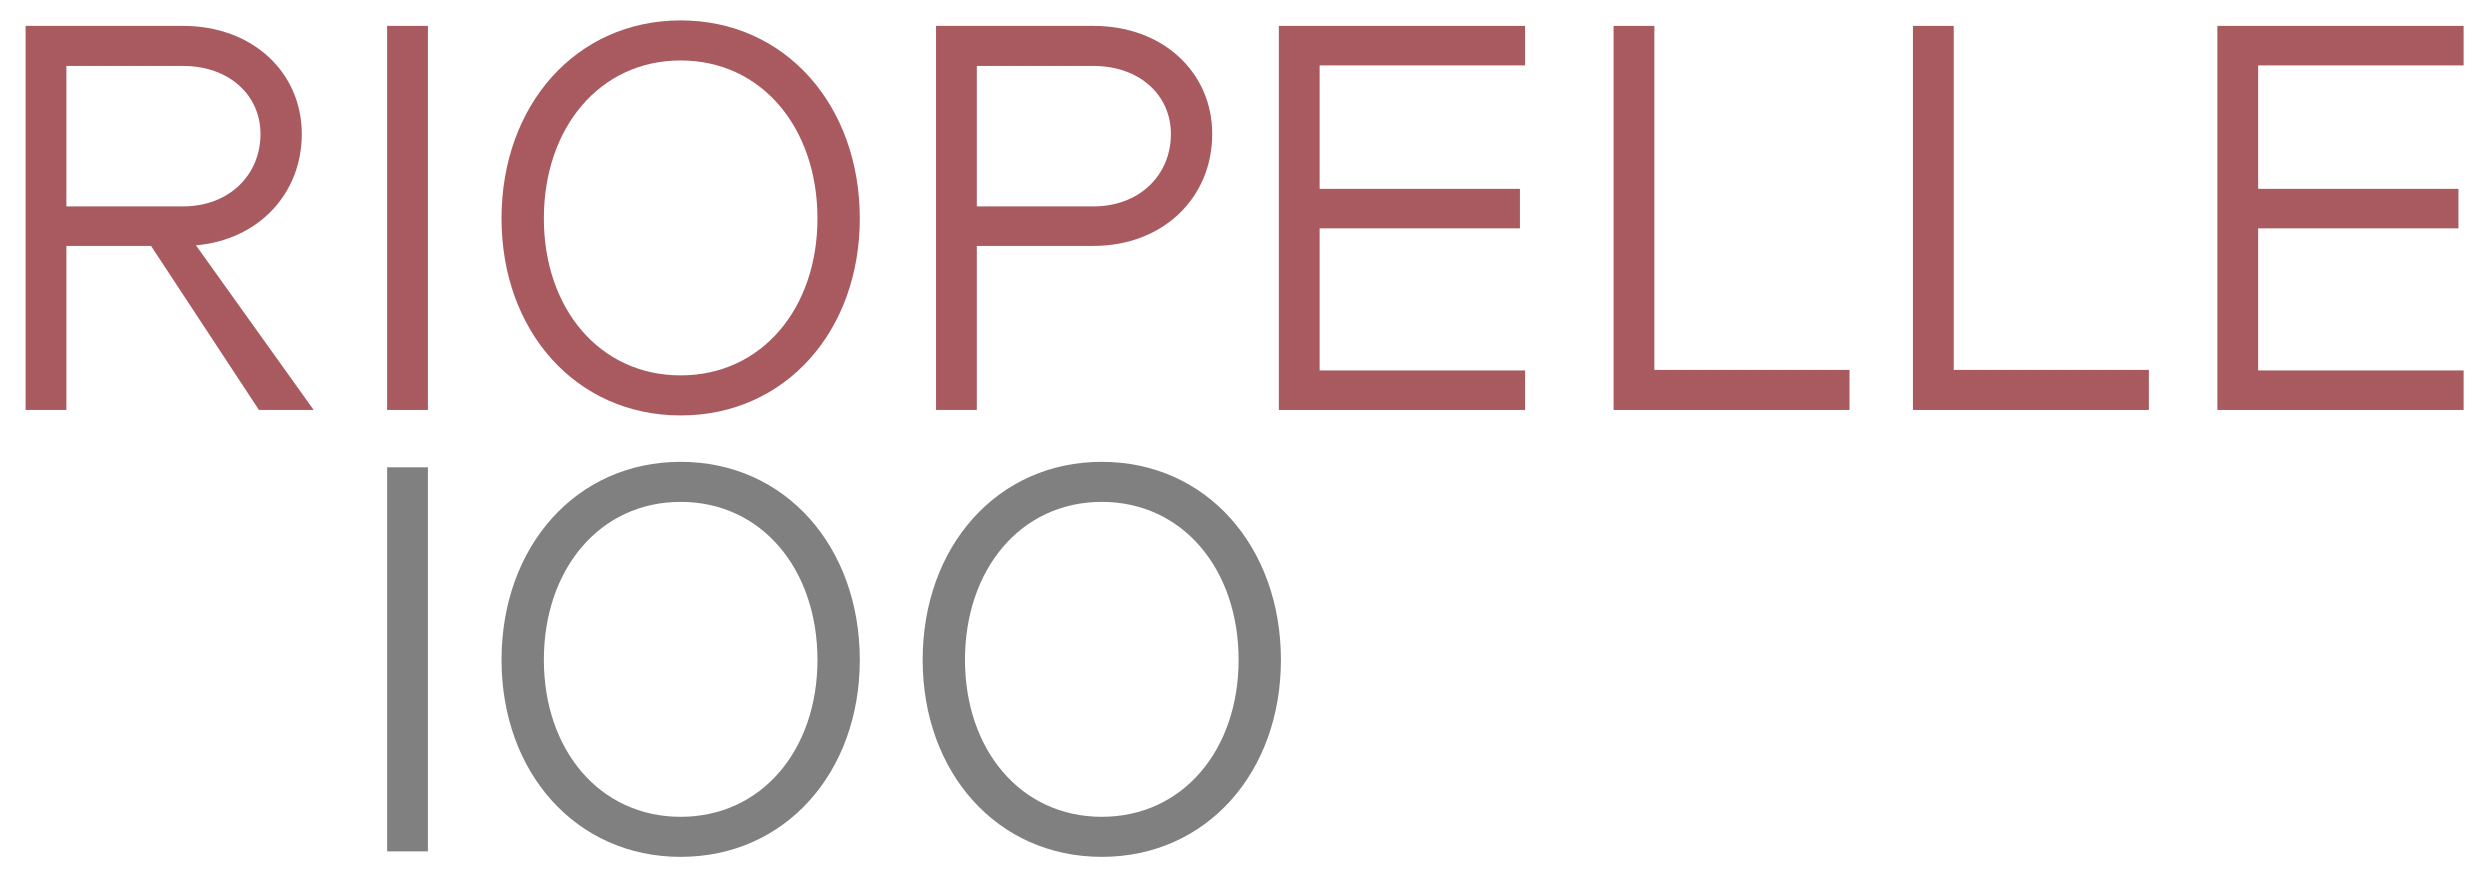 Riopelle 100